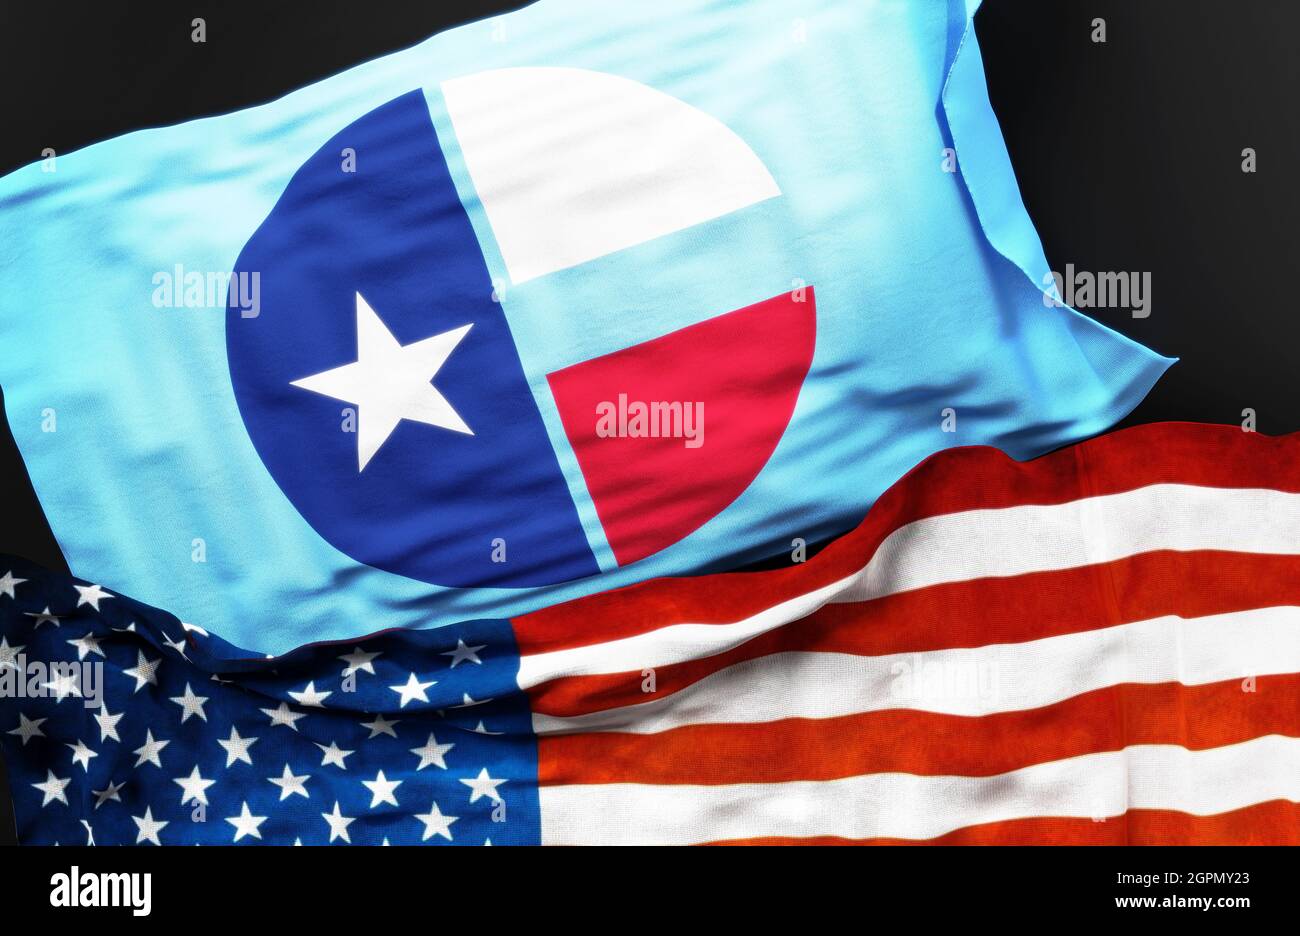 Flagge von Collin County Texas zusammen mit einer Flagge der Vereinigten Staaten von Amerika als Symbol der Einheit zwischen ihnen, 3d-Illustration Stockfoto